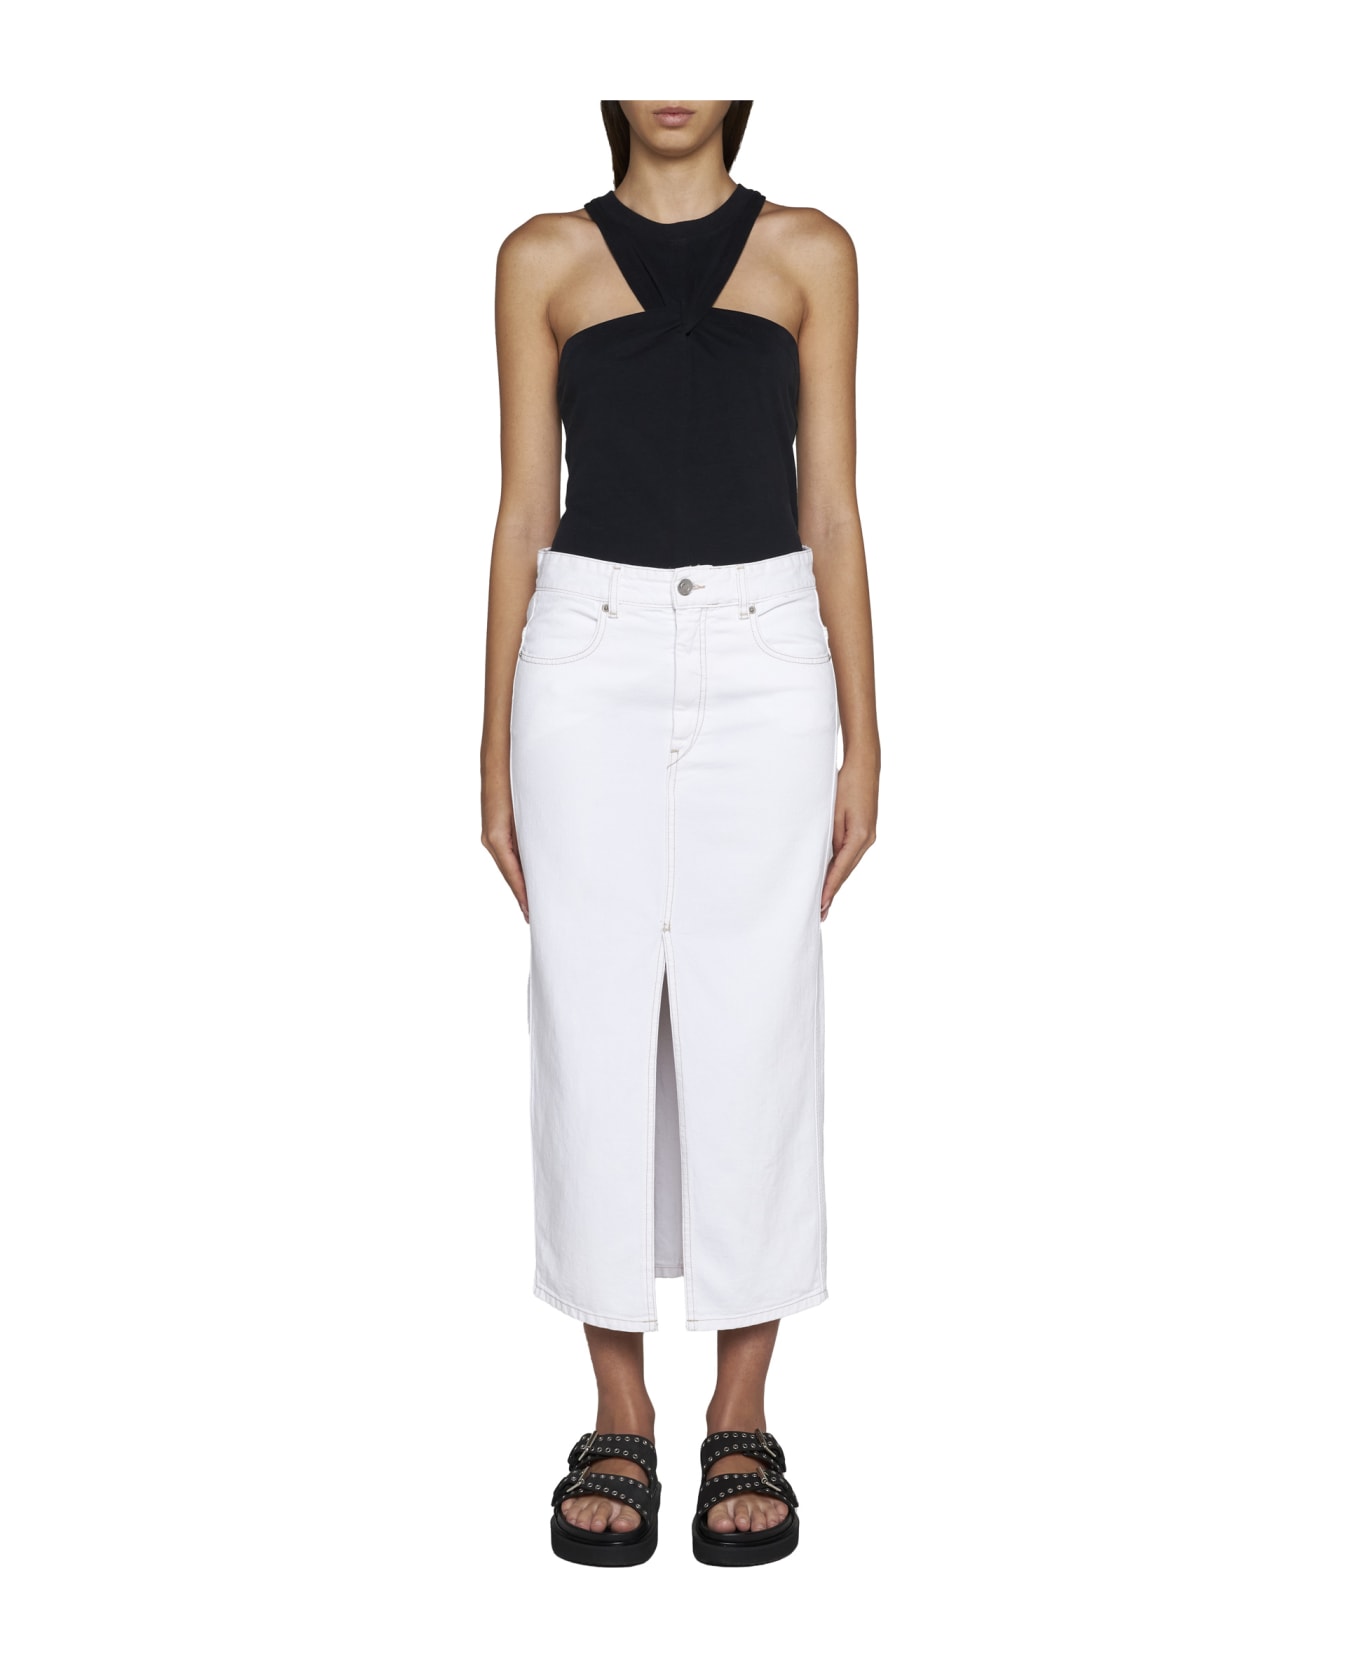 Isabel Marant Skirt - White